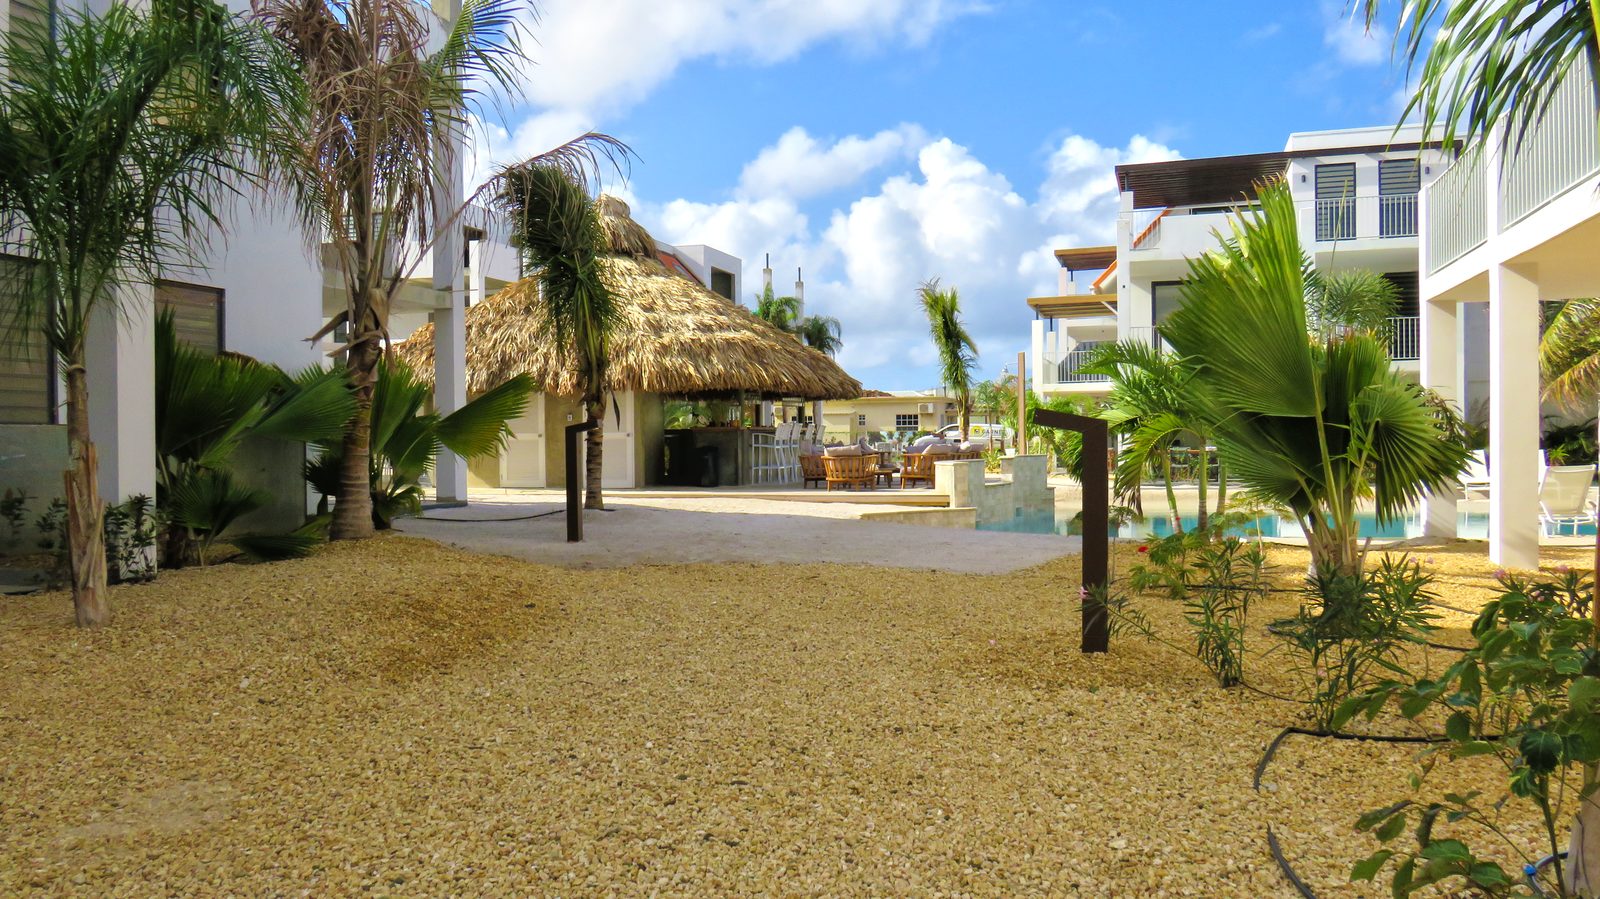 Uno de los mejores lugares para alojarse en Bonaire es Resort Bonaire. Un buen lugar para que las parejas y las familias se relajen y disfruten.
